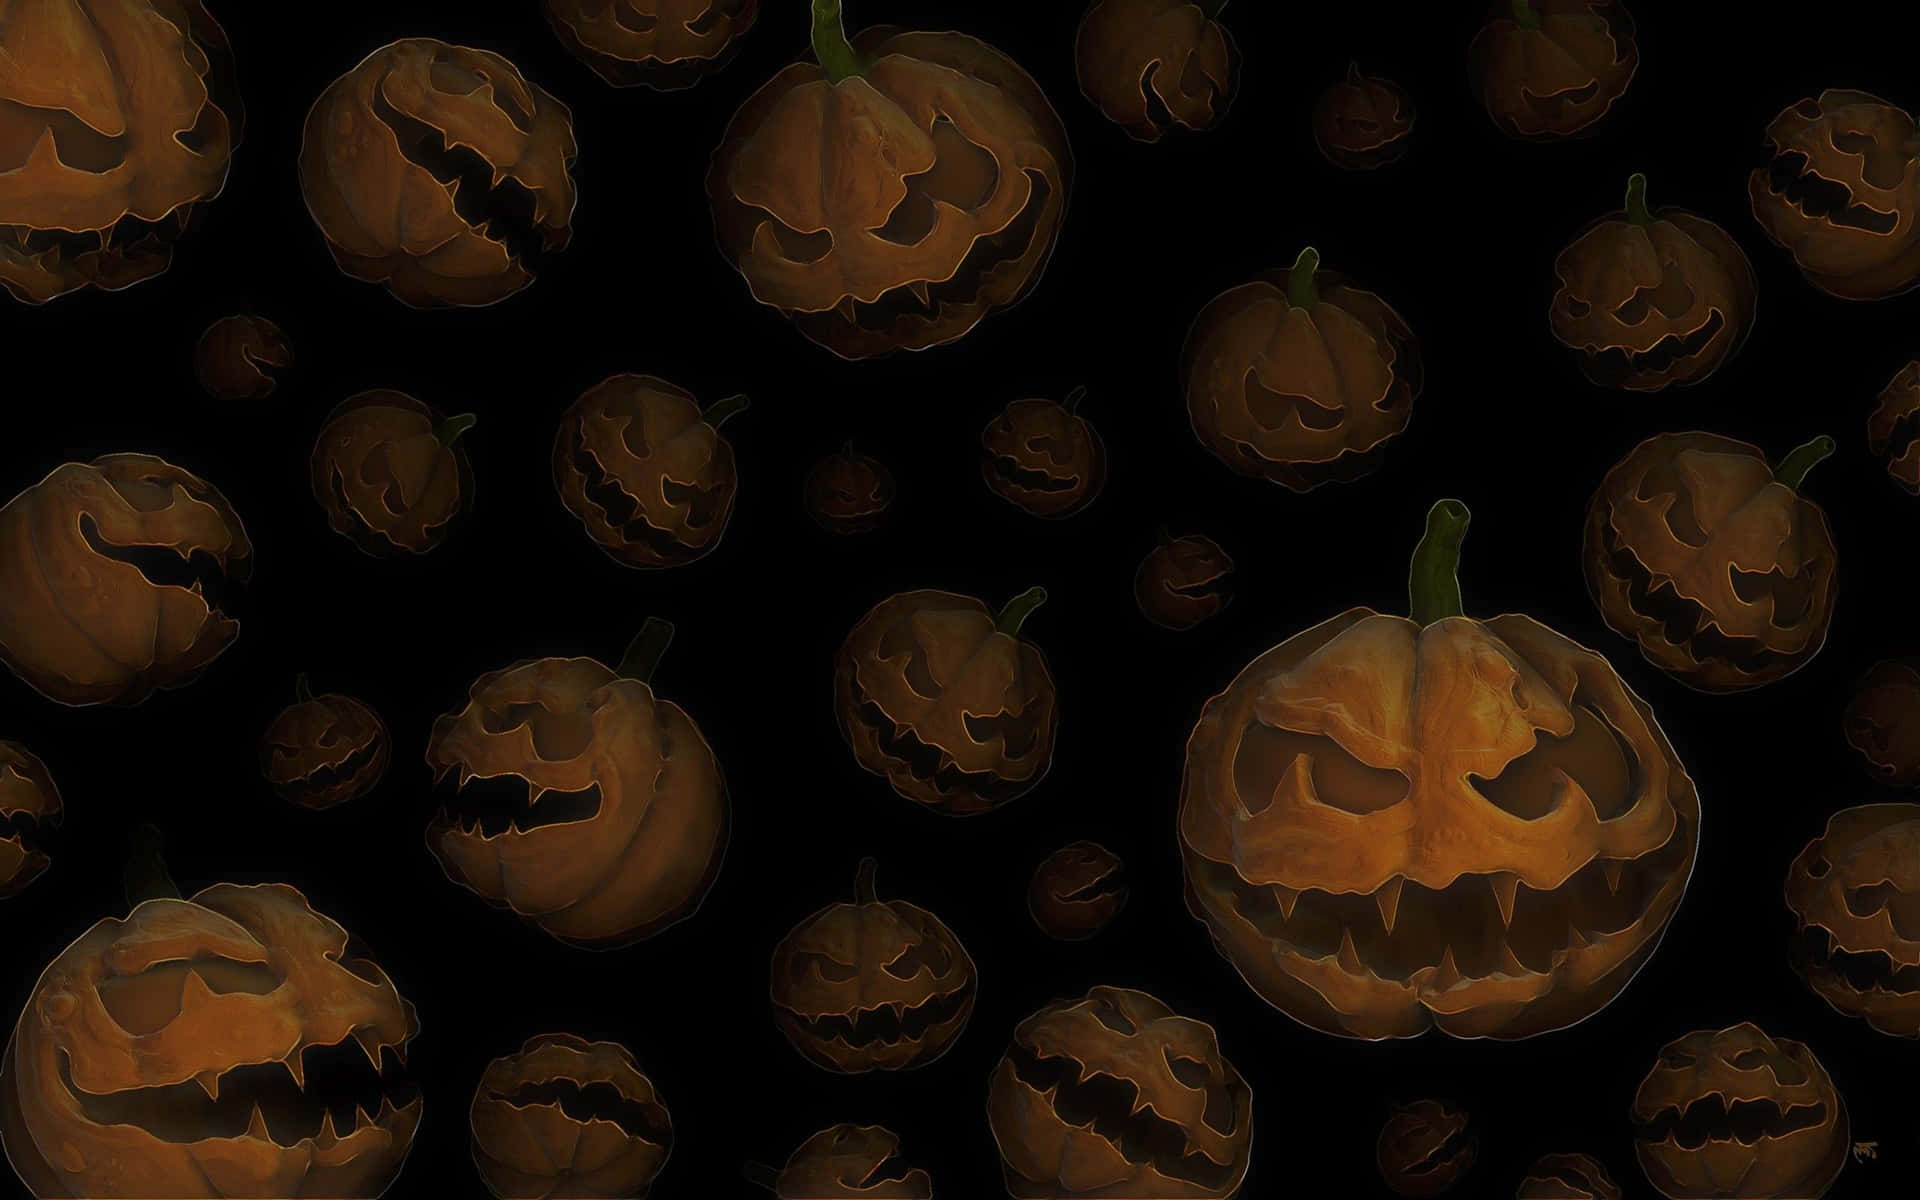 Ponteespeluznante Con Este Halloween Tumblr Aesthetic. Fondo de pantalla